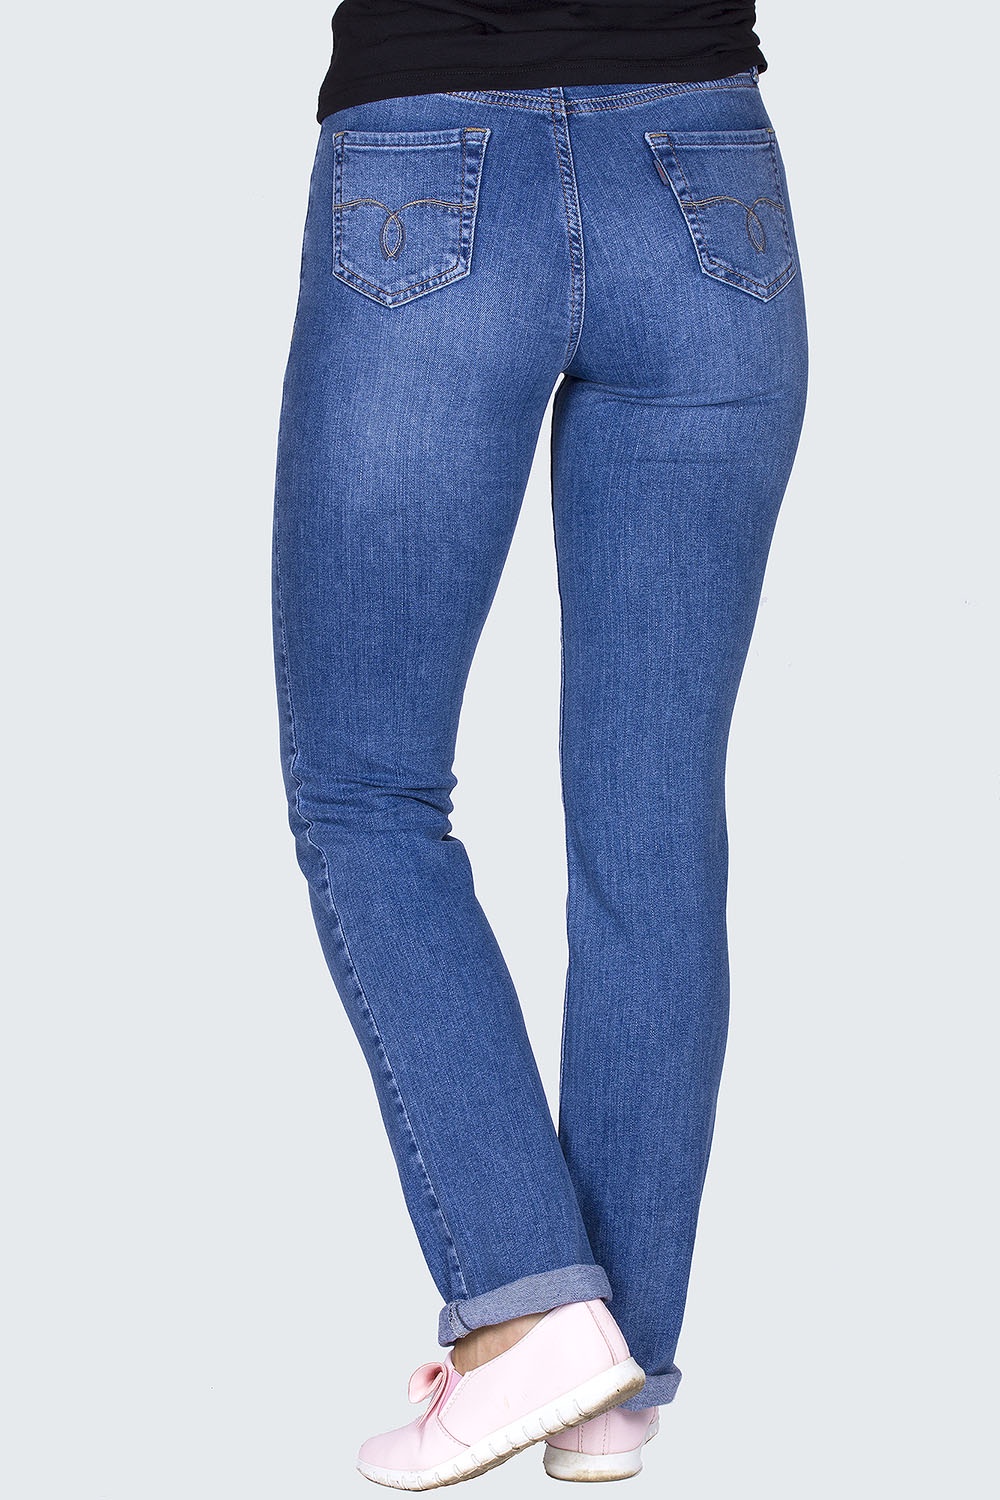 Купить джинсы 48 размера. Джинсы Дайрос модель 998. Джинсы женские Dairos gd5010380 синие 33/32. Джинсы Dairos 979. Что такое Size на джинсах.